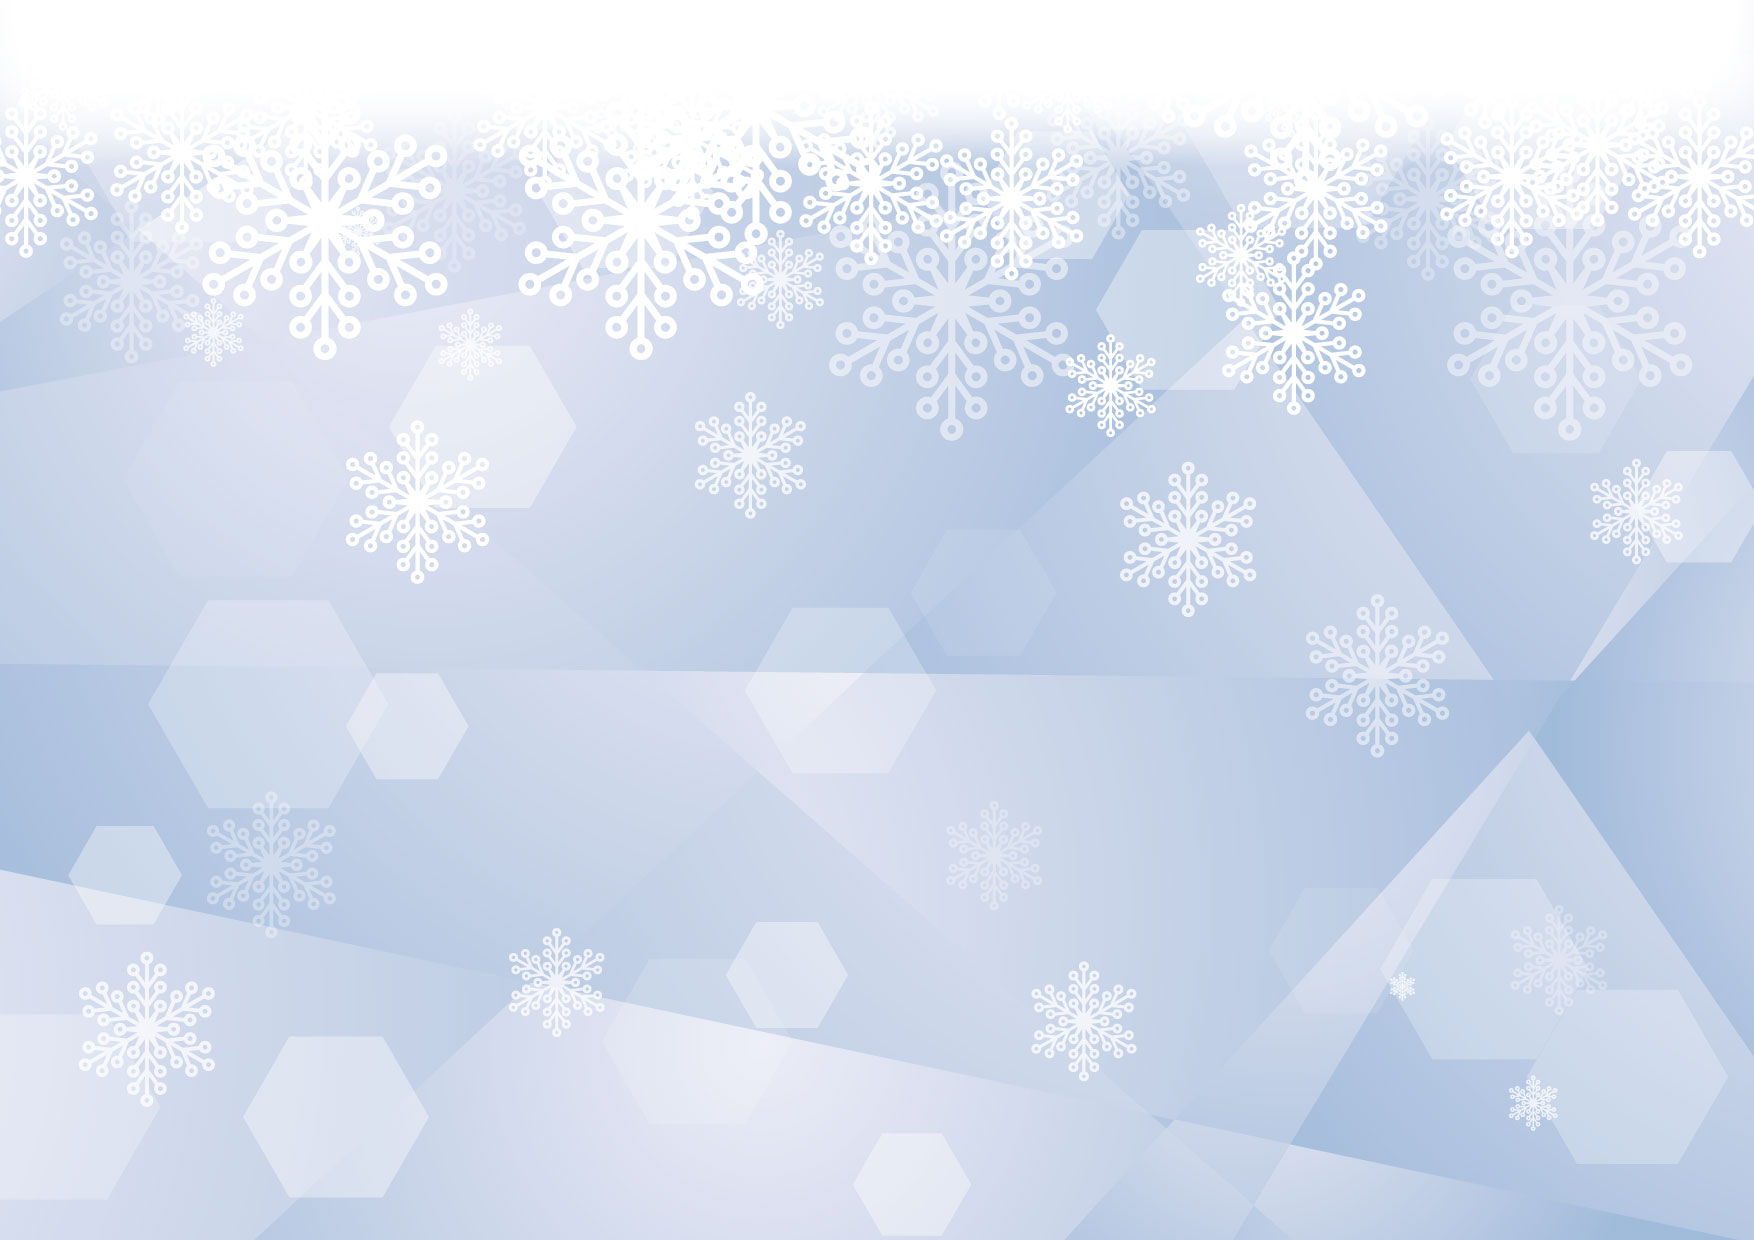 可愛いイラスト無料 雪の結晶 ガラス ブルー 背景 Free Illustration Snowflakes Glass Blue Background 公式 イラストダウンロード